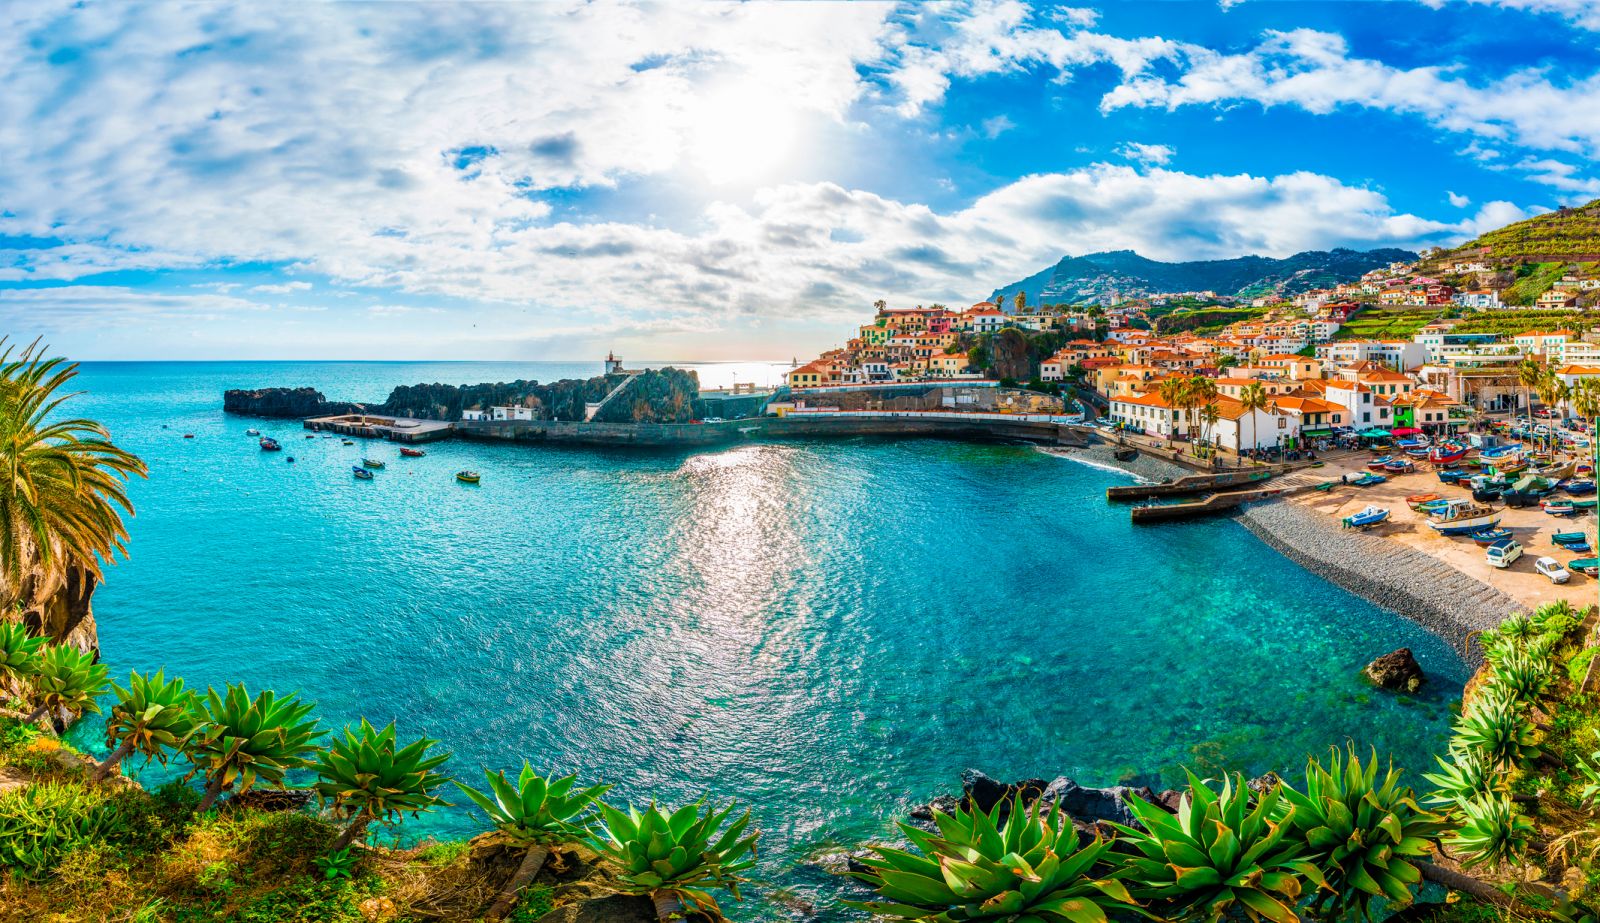 Camara dos Lobos, Funchal, Madeira, Portugal